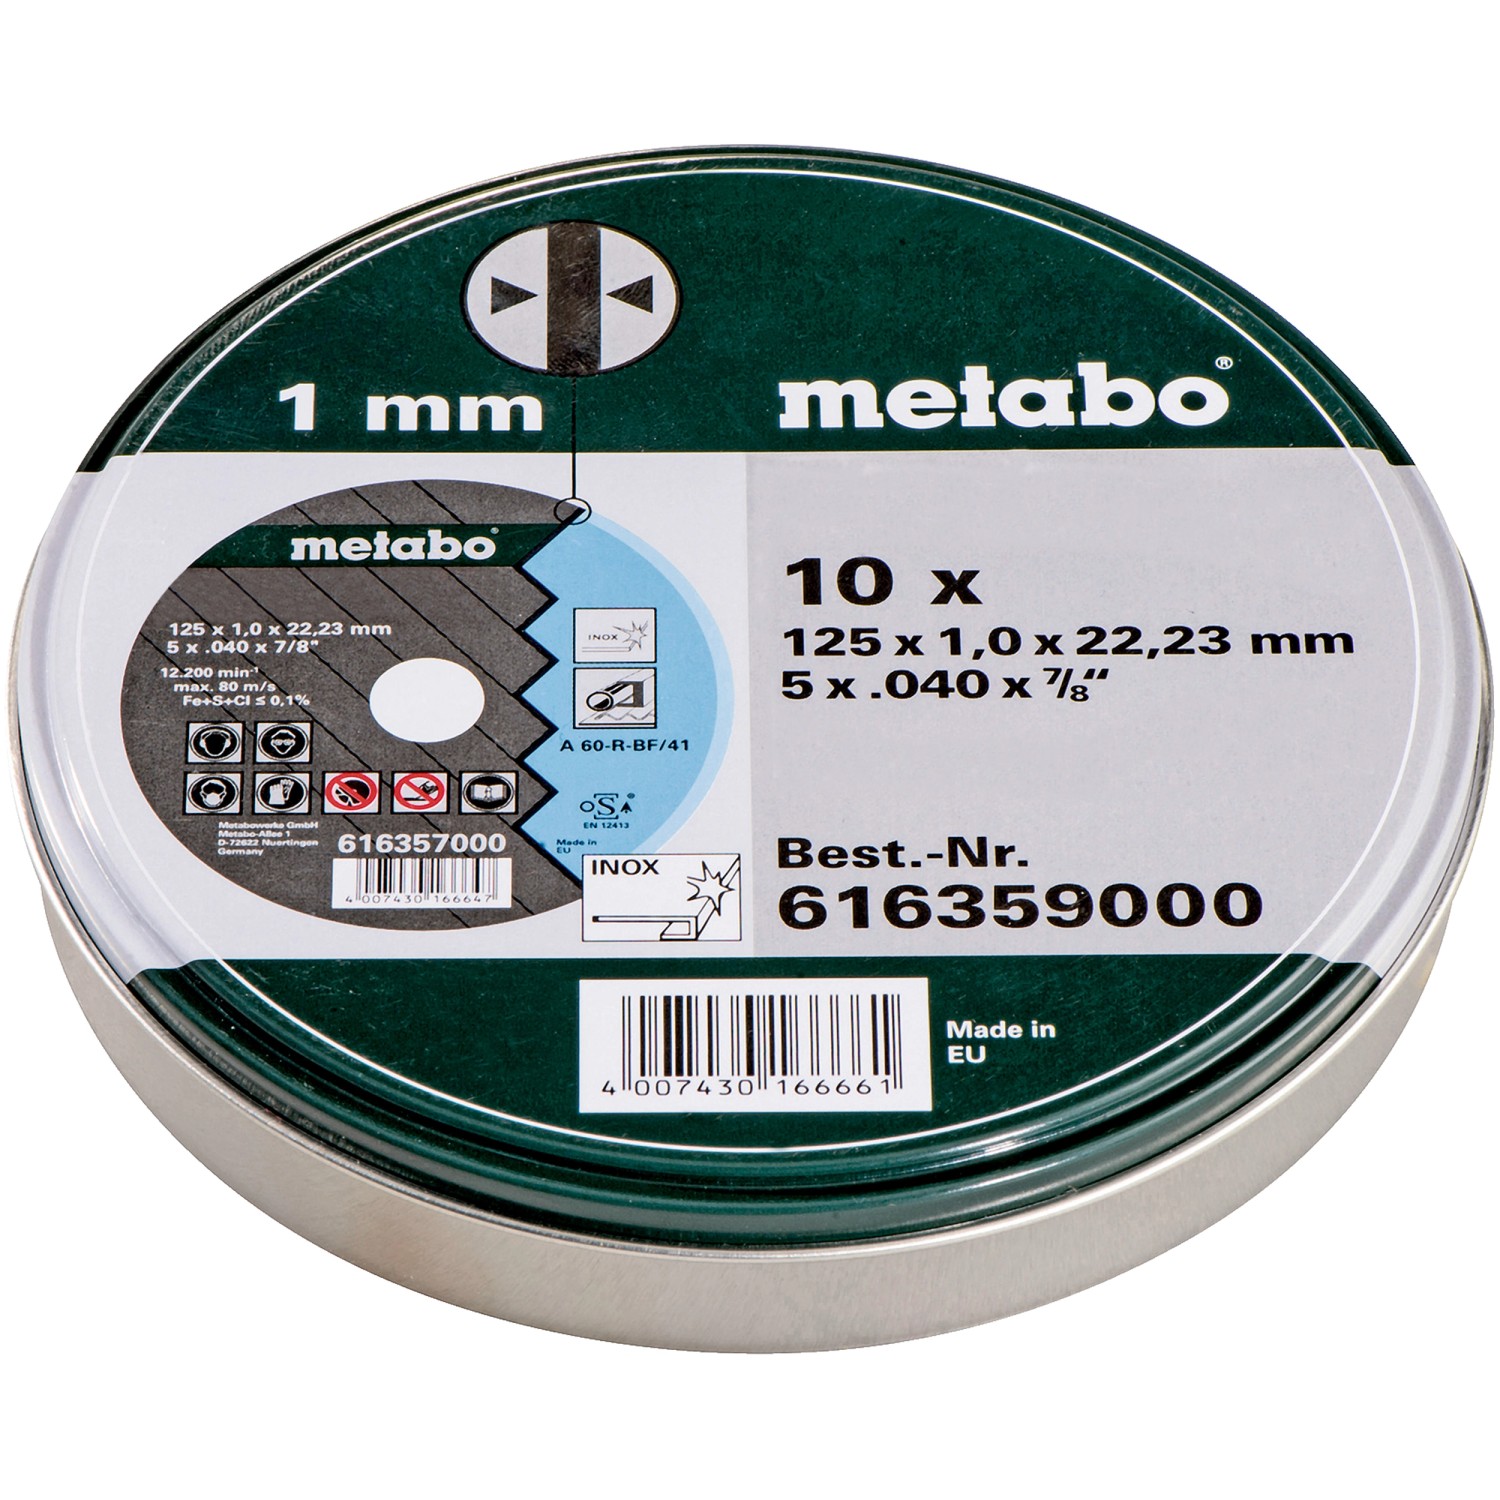 Metabo Trennscheiben Metall 125 mm 10 Stück